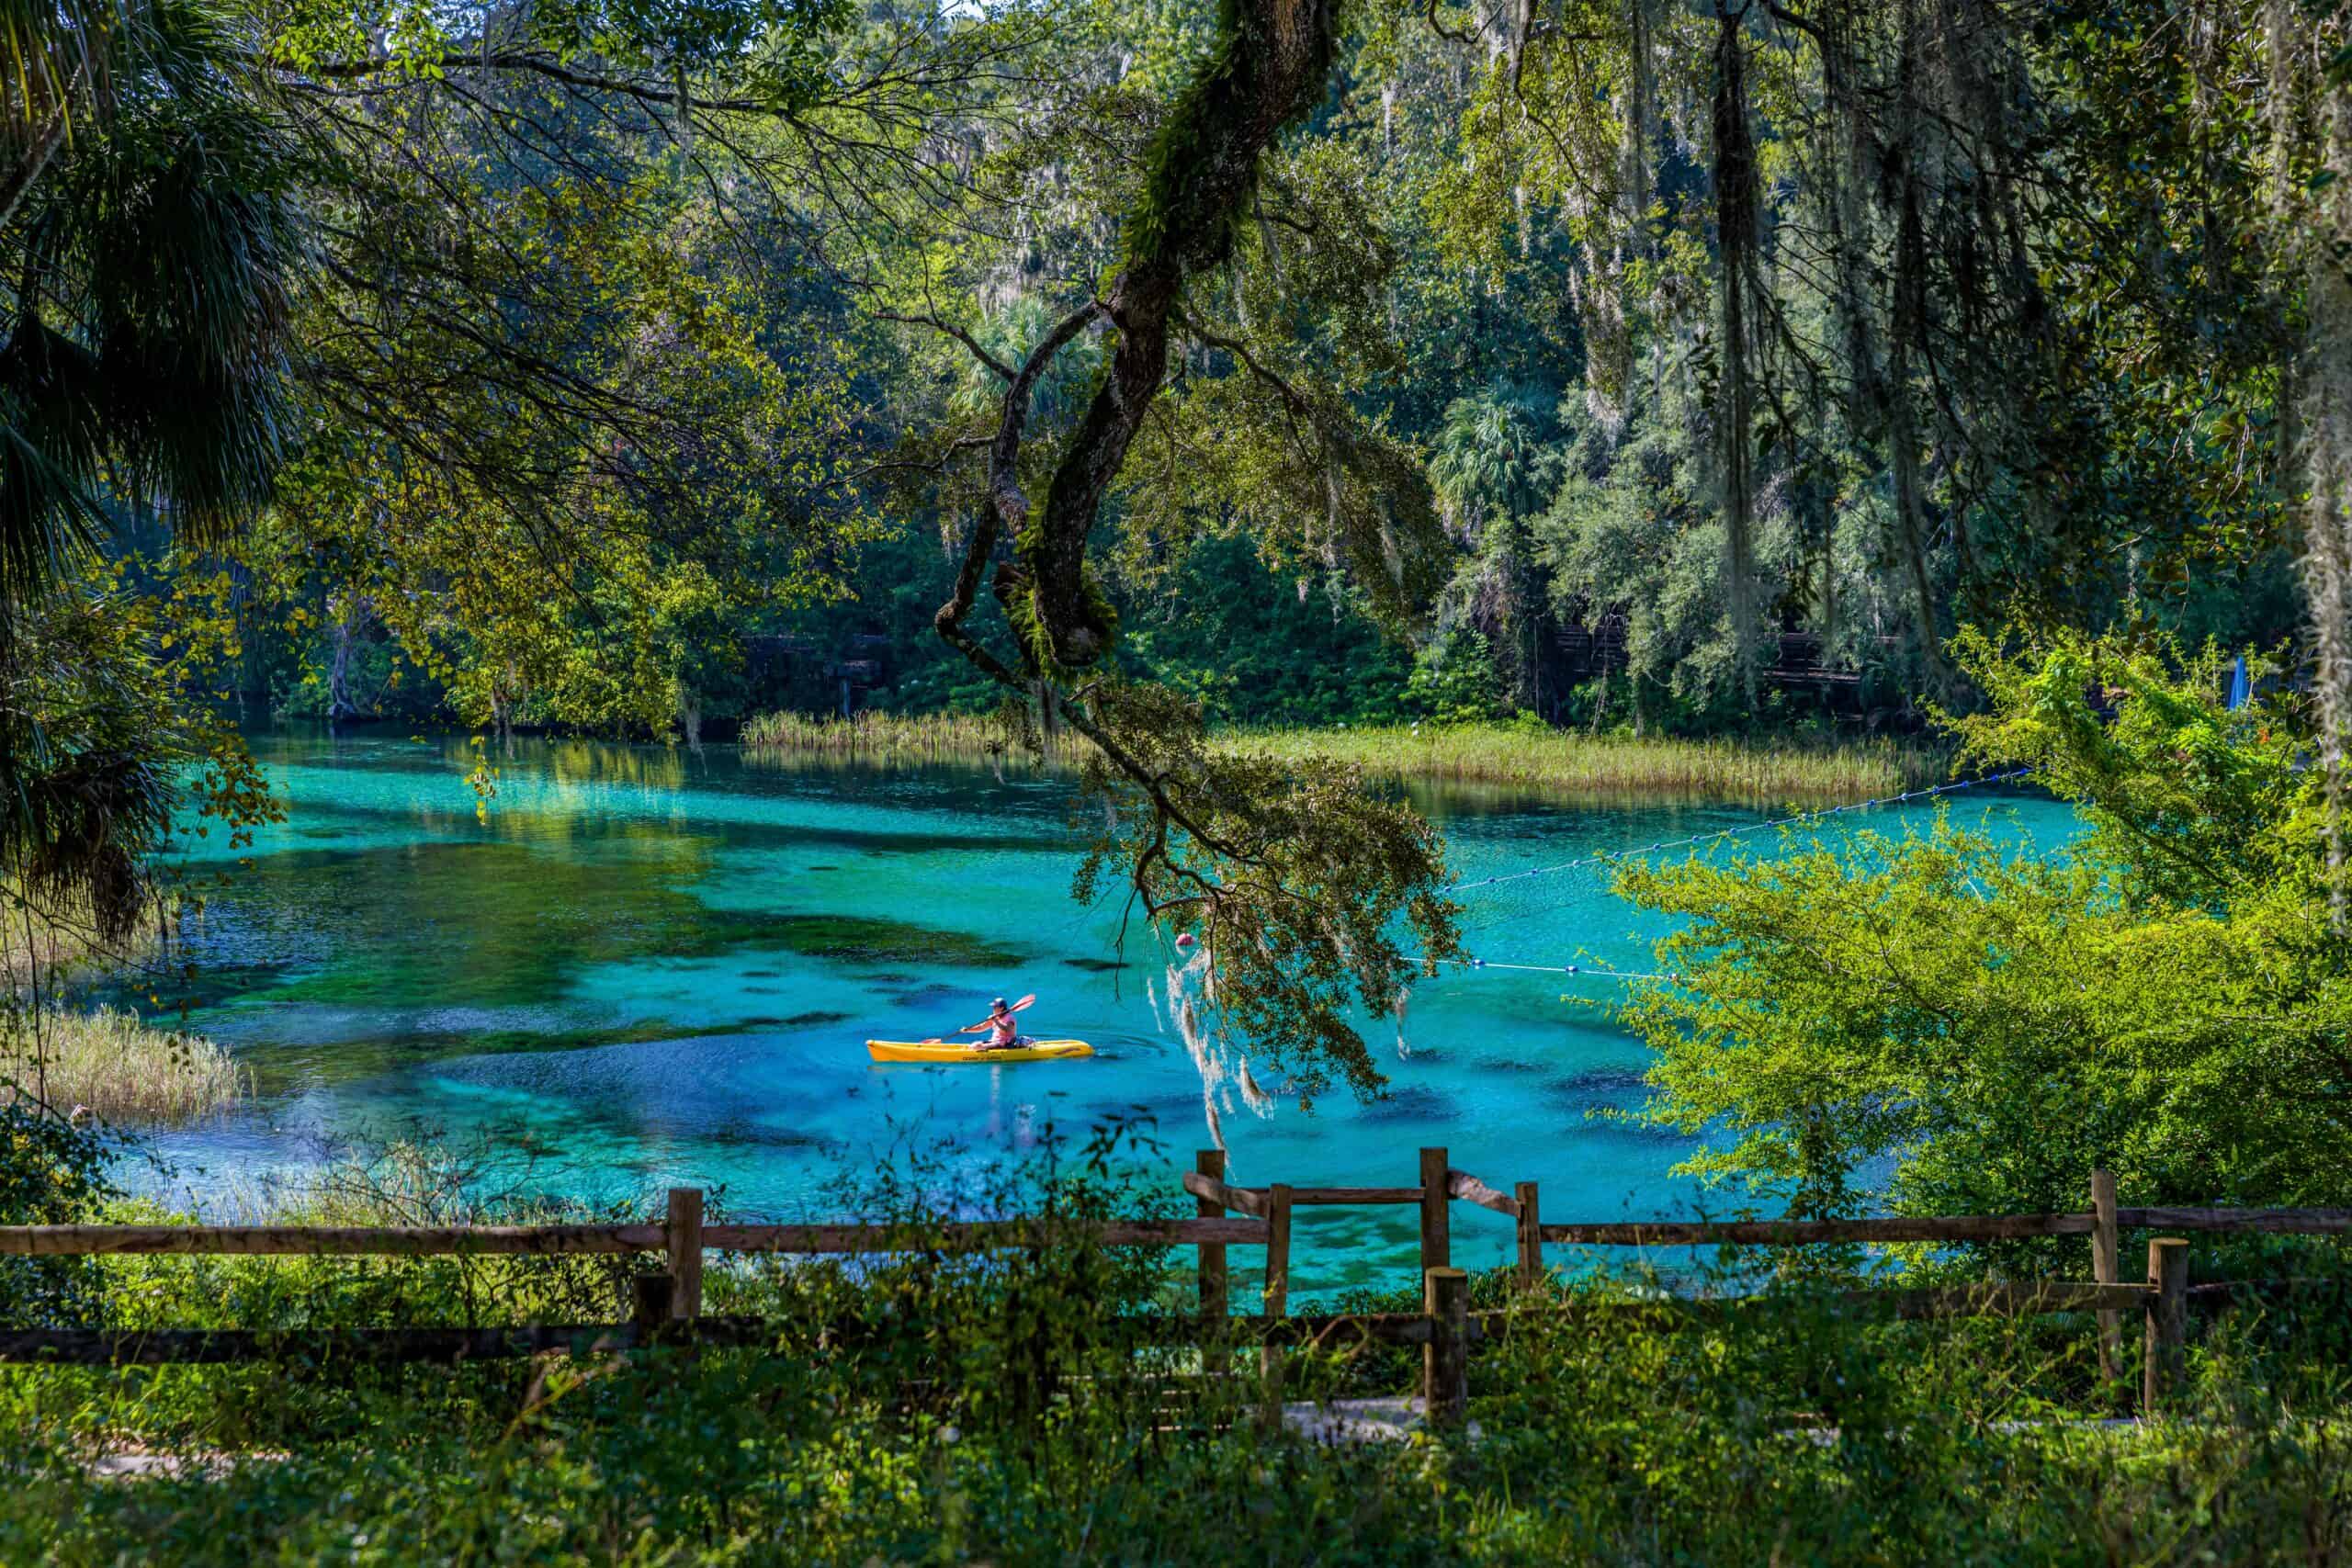 Kayaking on Springs Florida